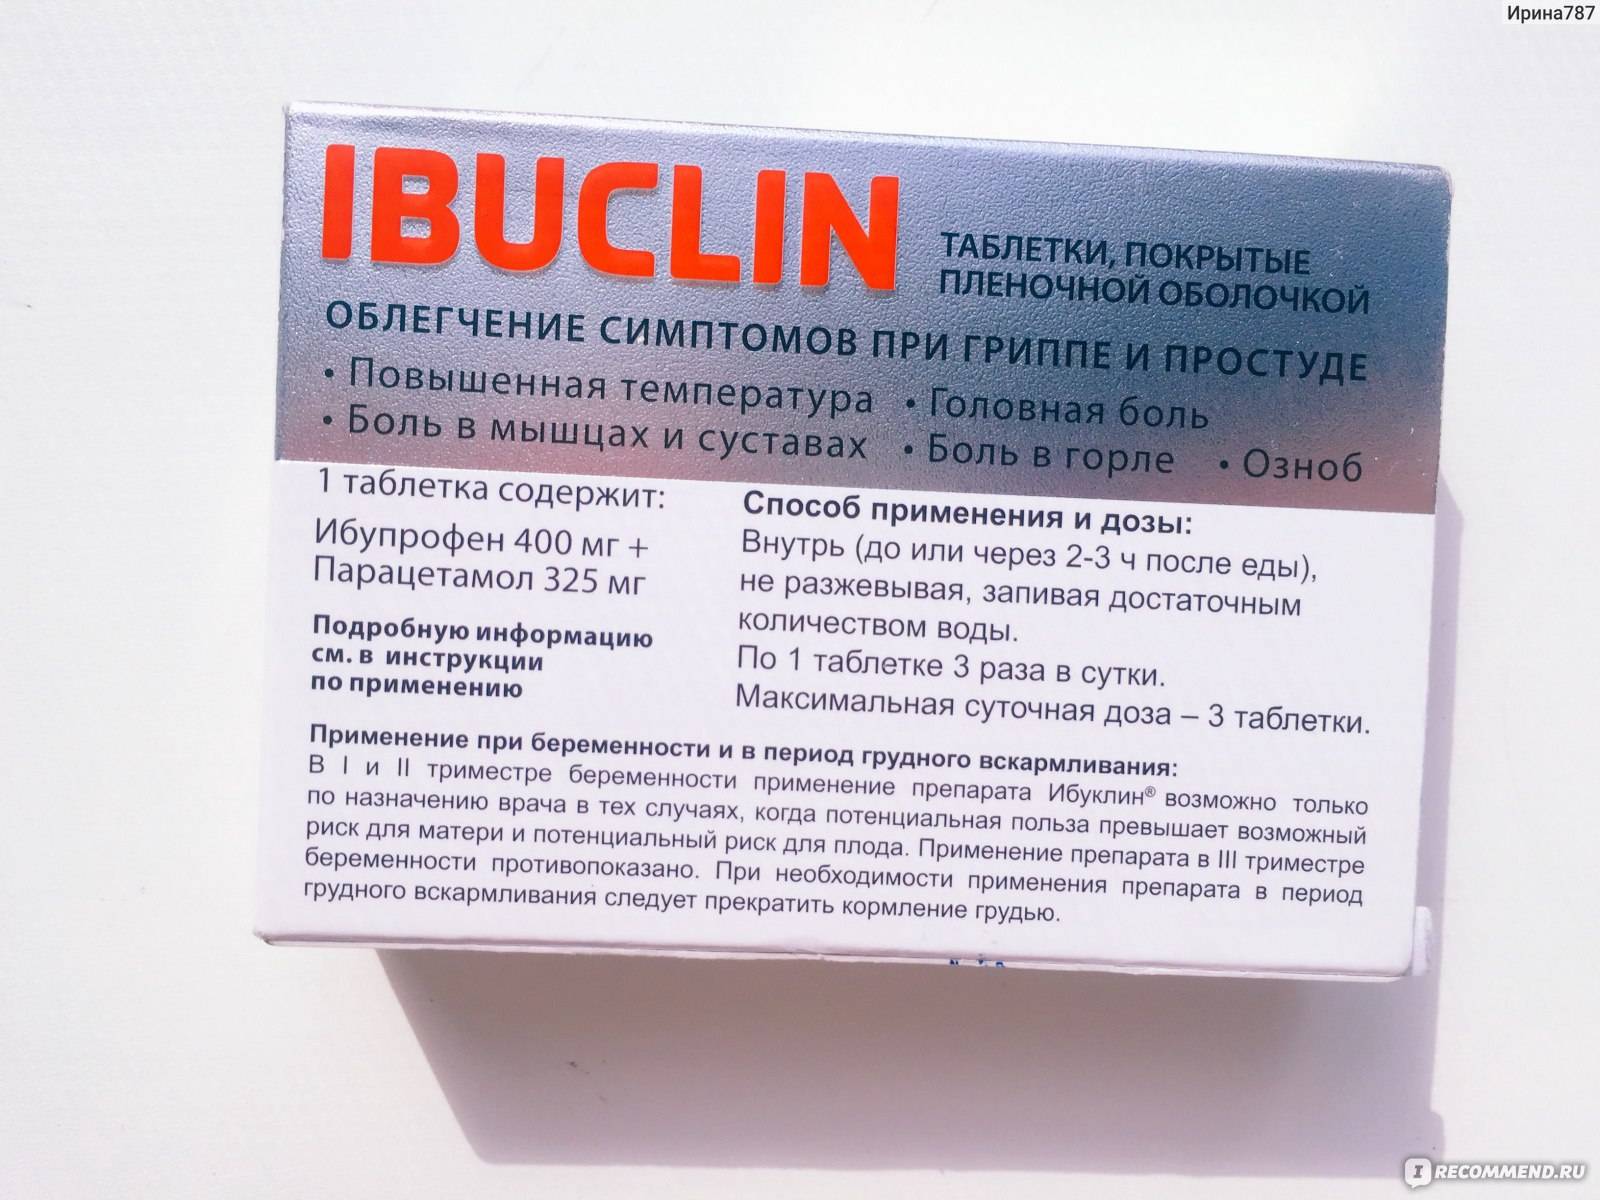 Ибуклин в краснодаре - инструкция по применению, описание, отзывы пациентов и врачей, аналоги